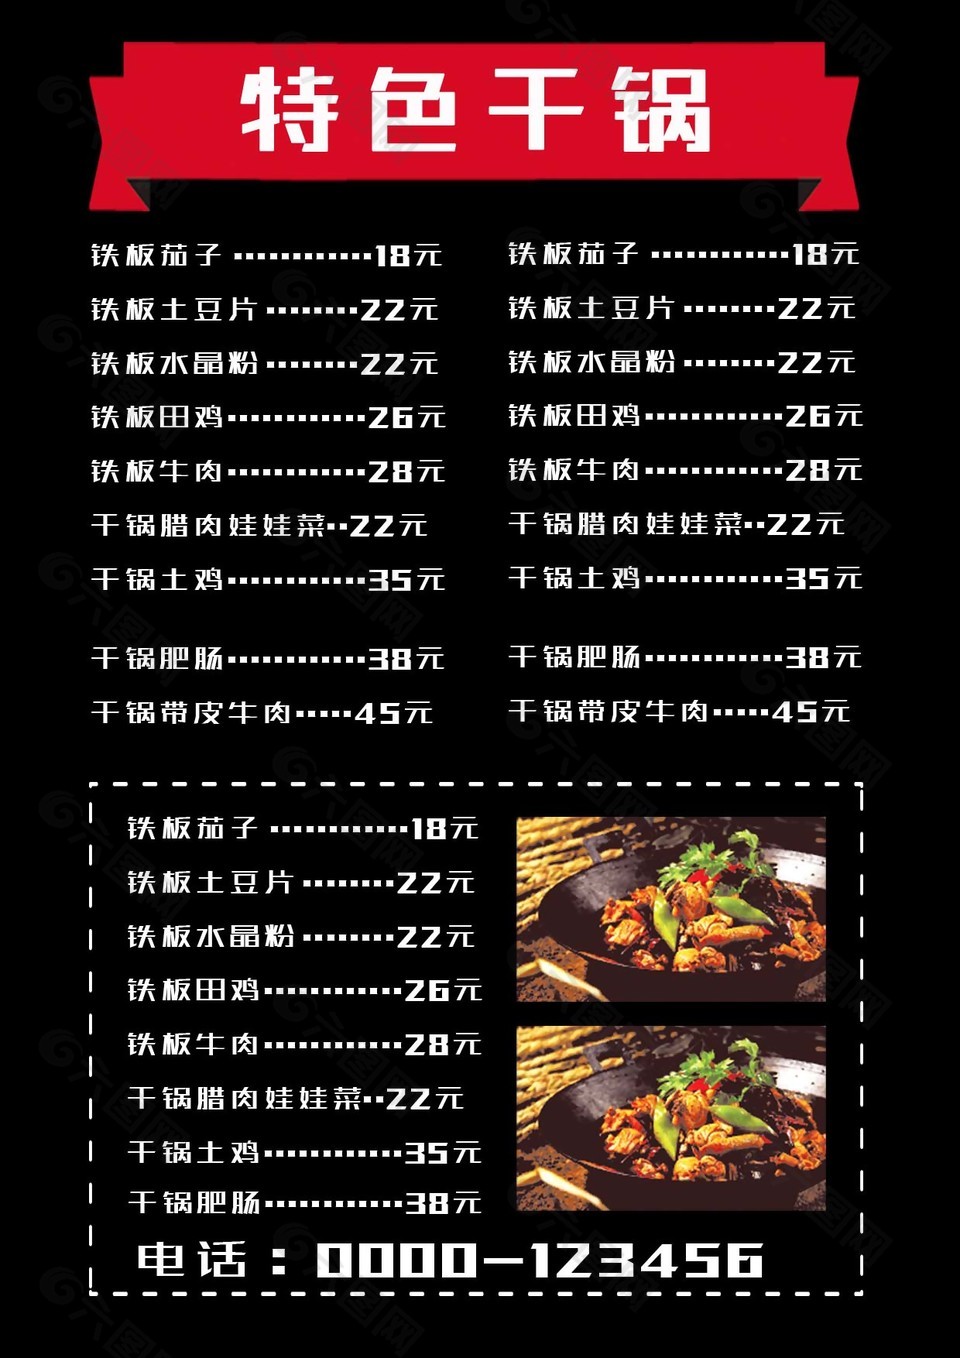 特色干锅菜单模板素材图片大全